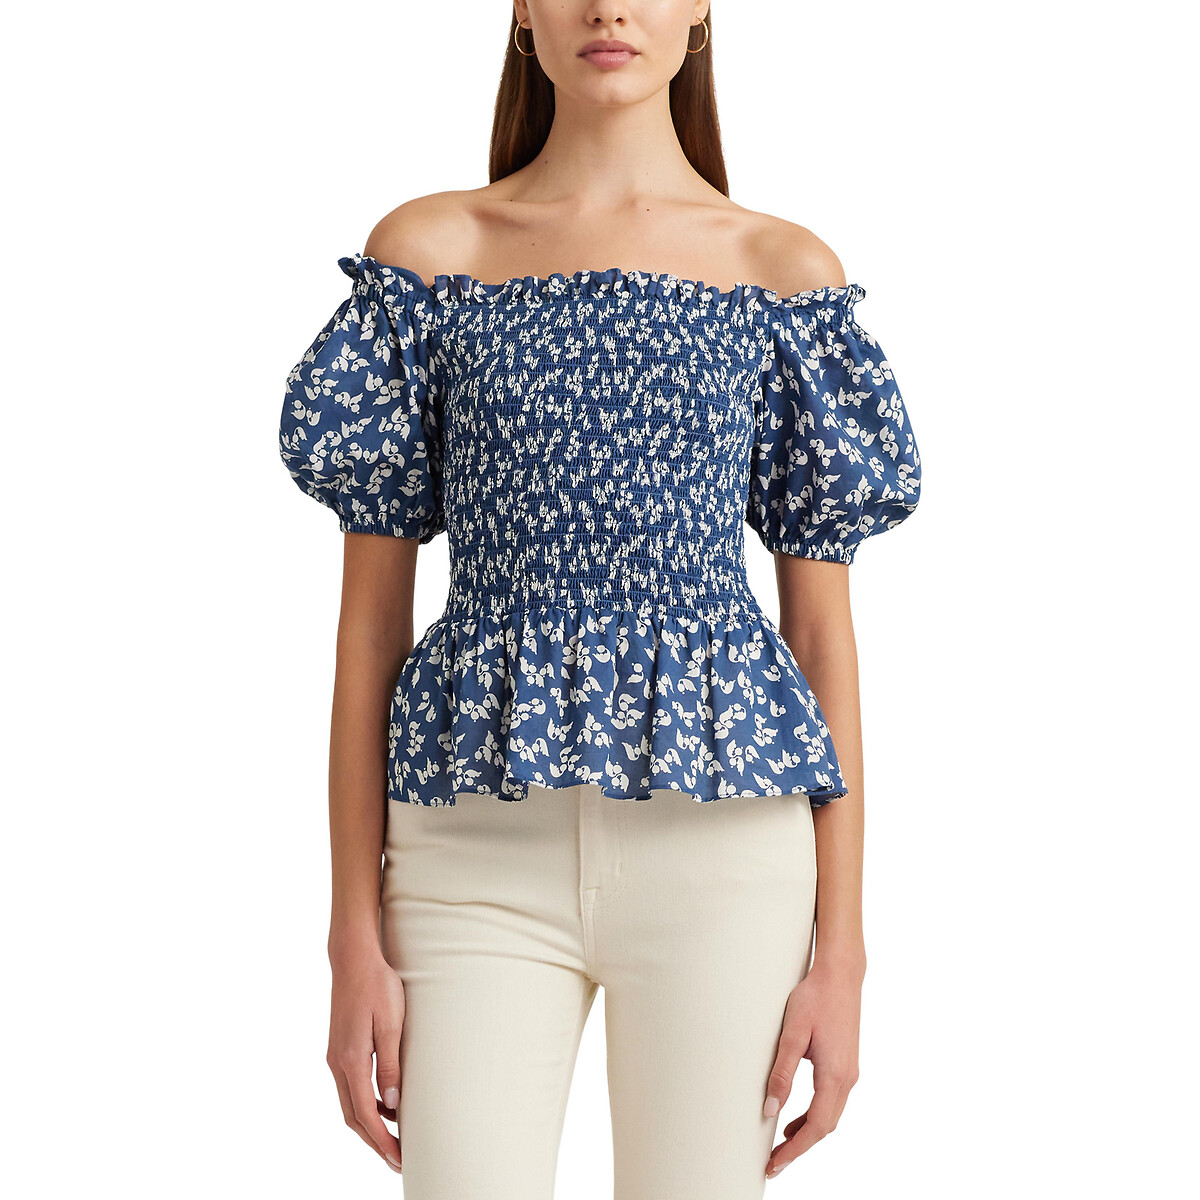 Блузка с принтом со складками и короткими рукавами BIERBRIN XL синий блузка с принтом и короткими рукавами xl розовый